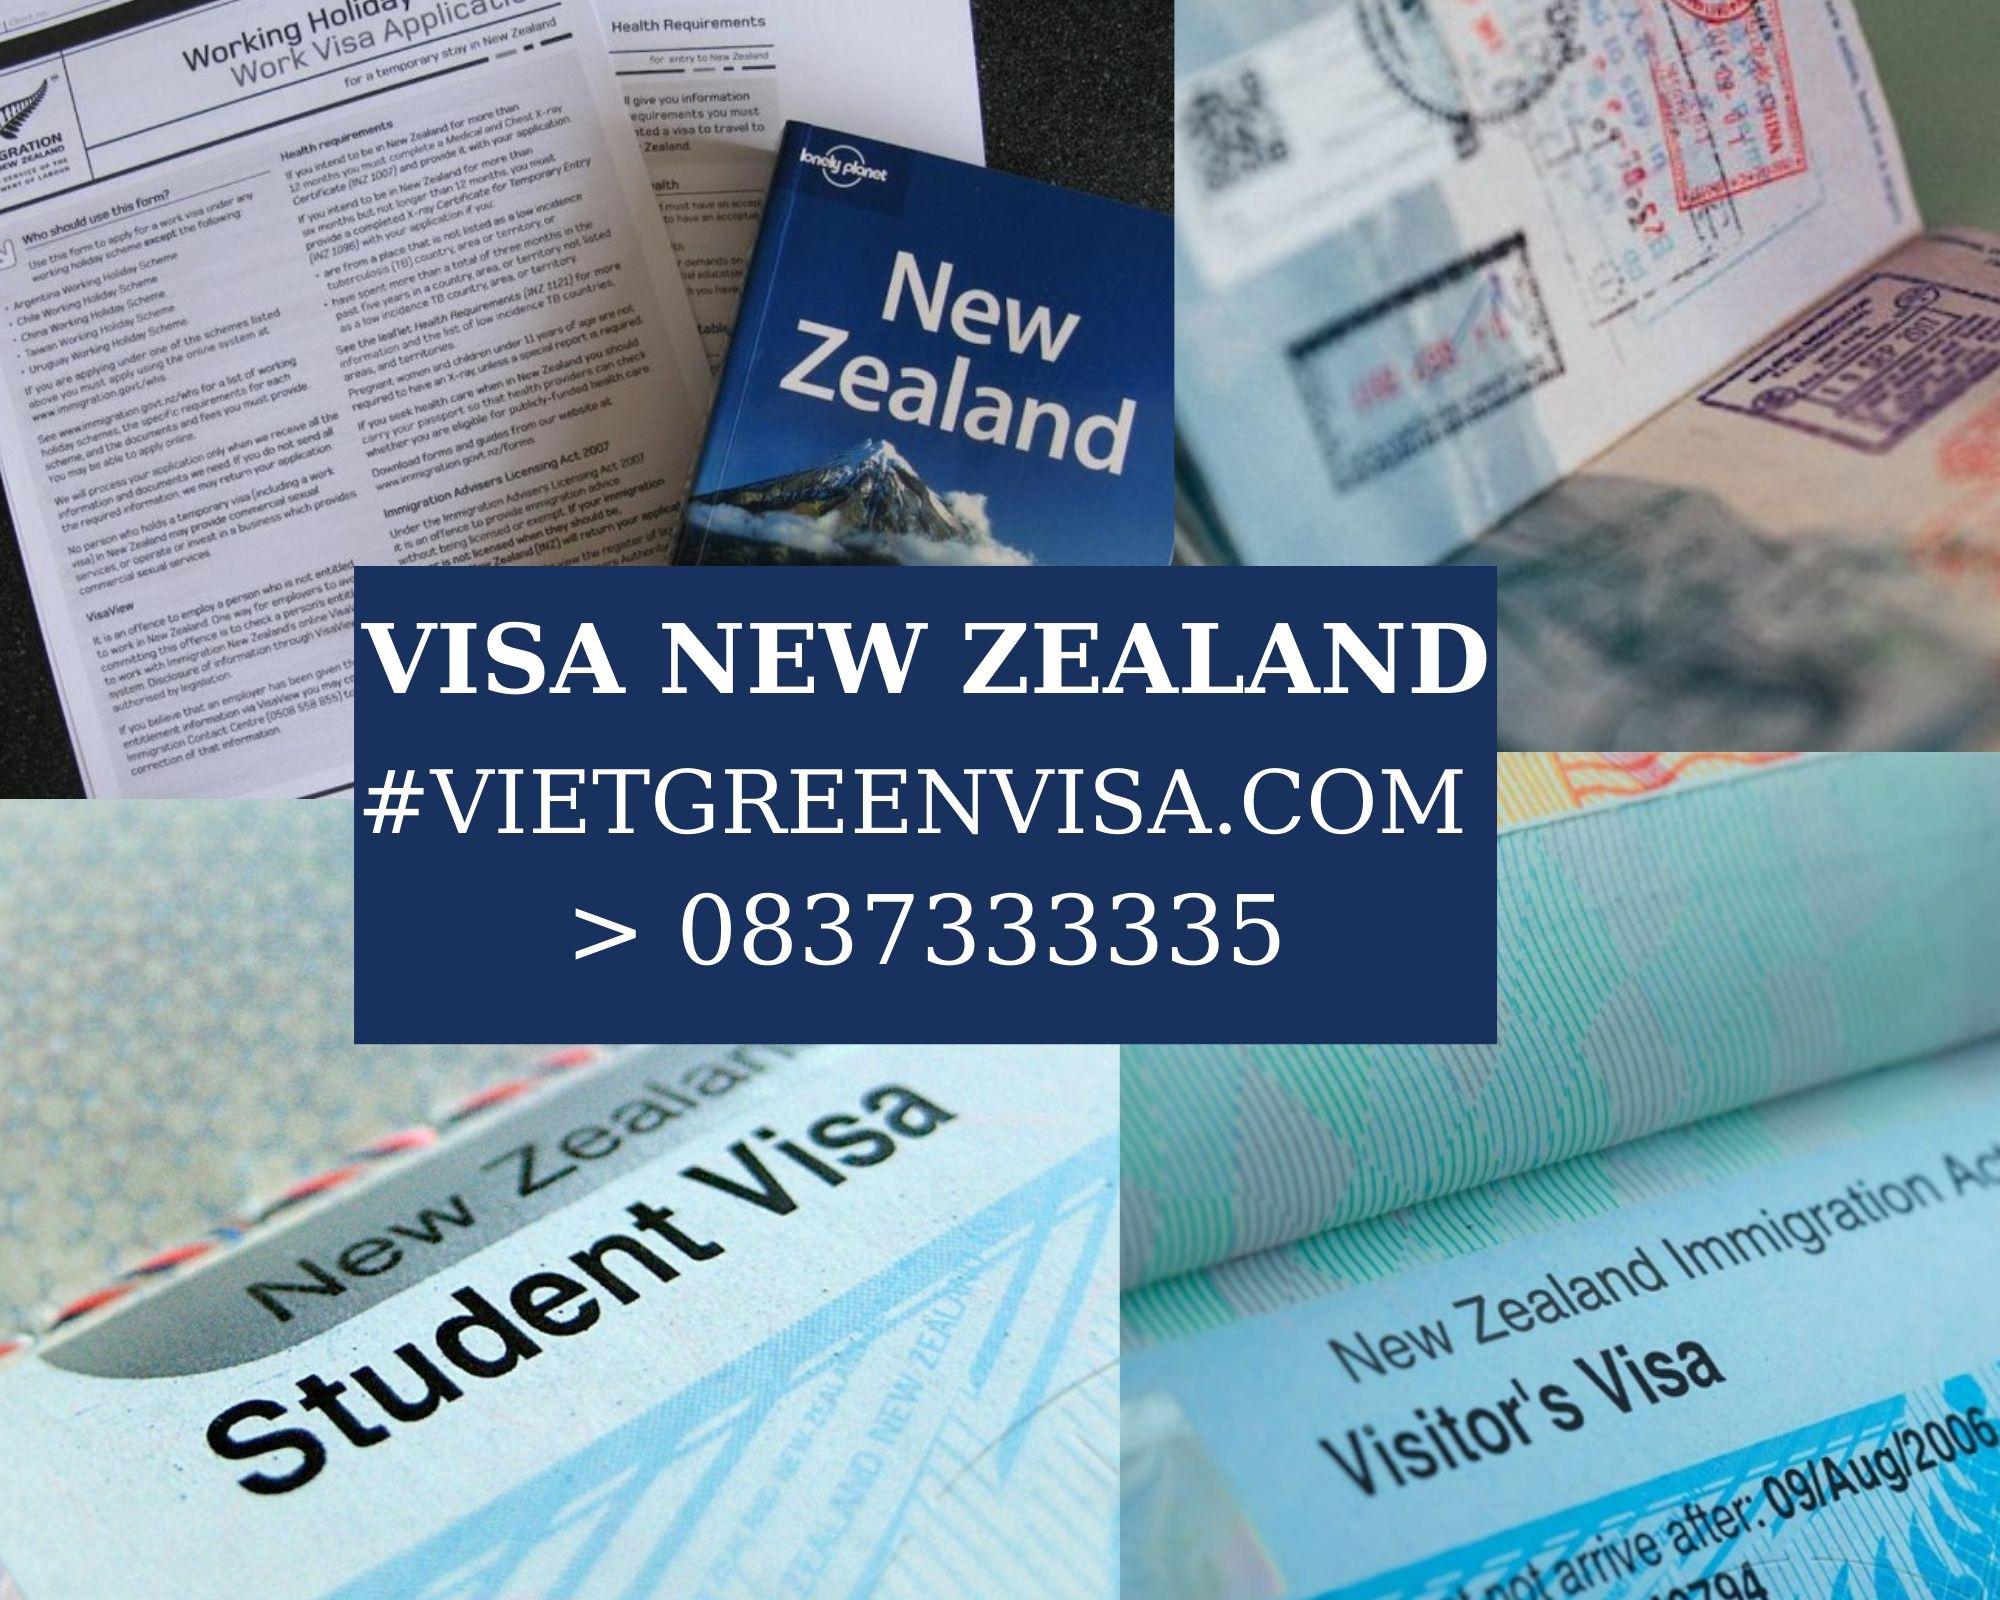 Dịch vụ Visa New Zealand trọn gói tại Hà Nội, Hồ Chí Minh